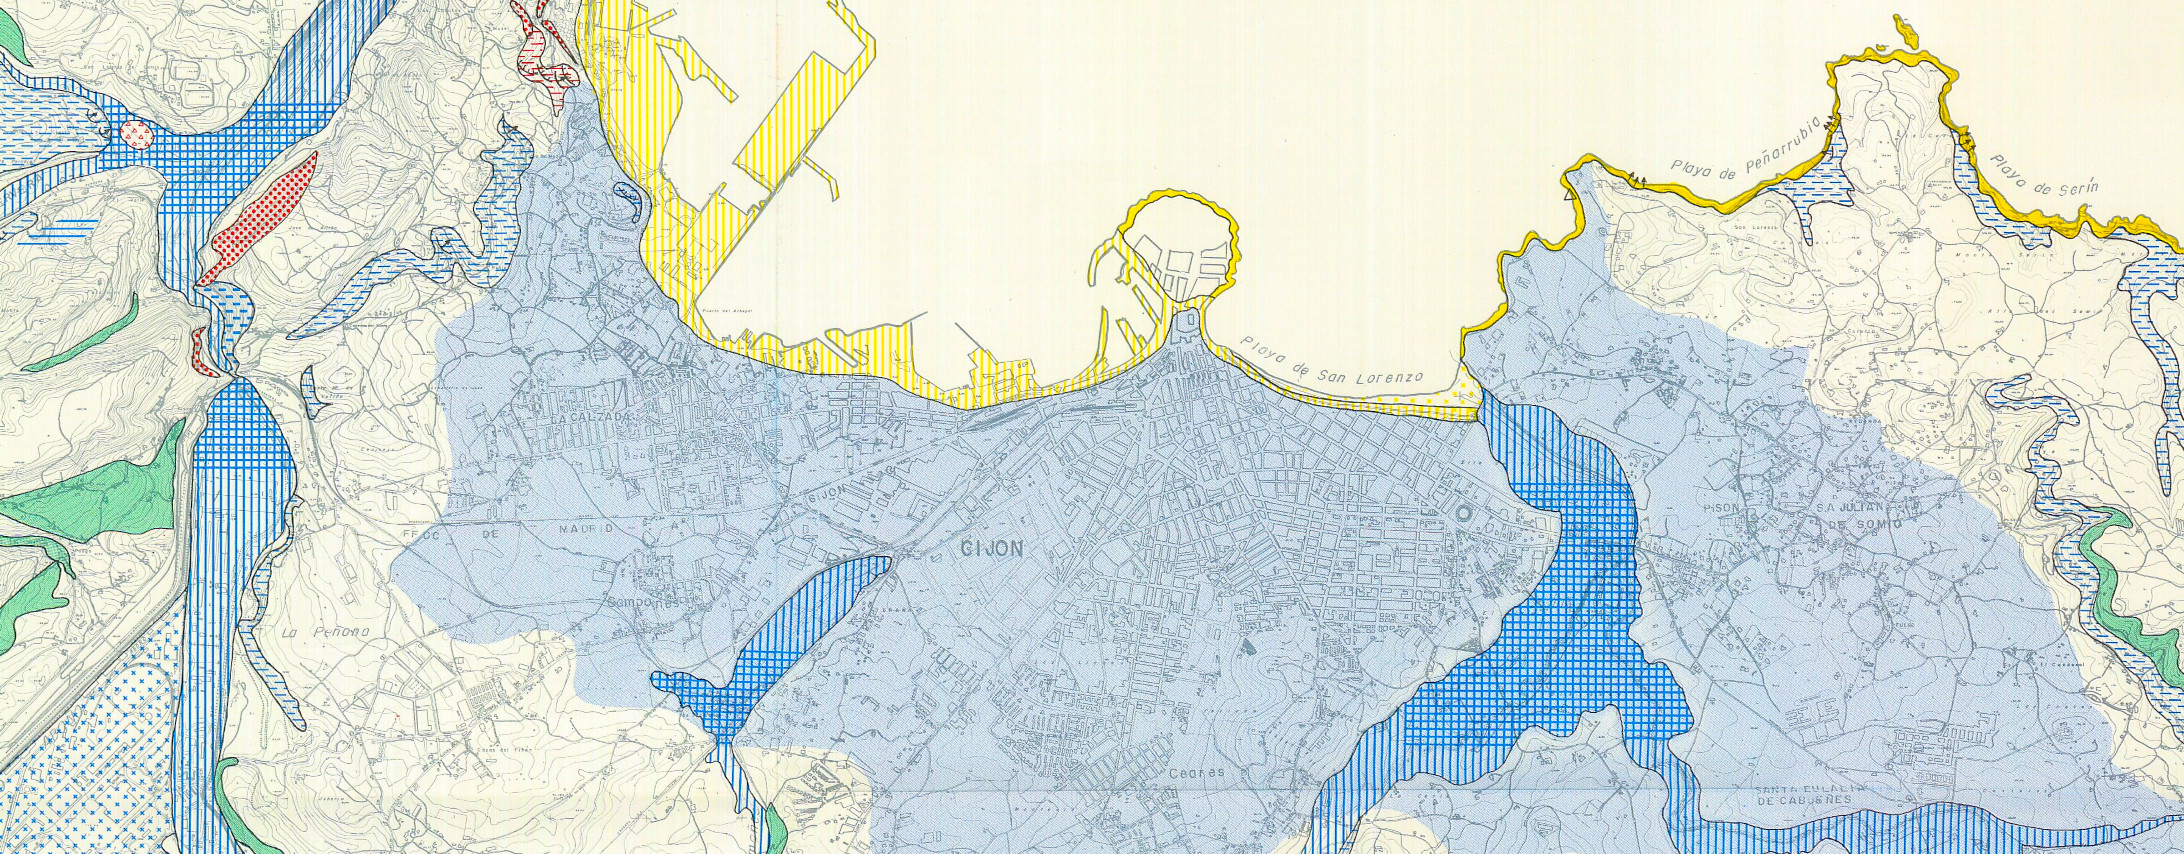 Mapa Geotécnico y de Riesgos Geológicos de la ciudad de Gijón a escala 1:25.000